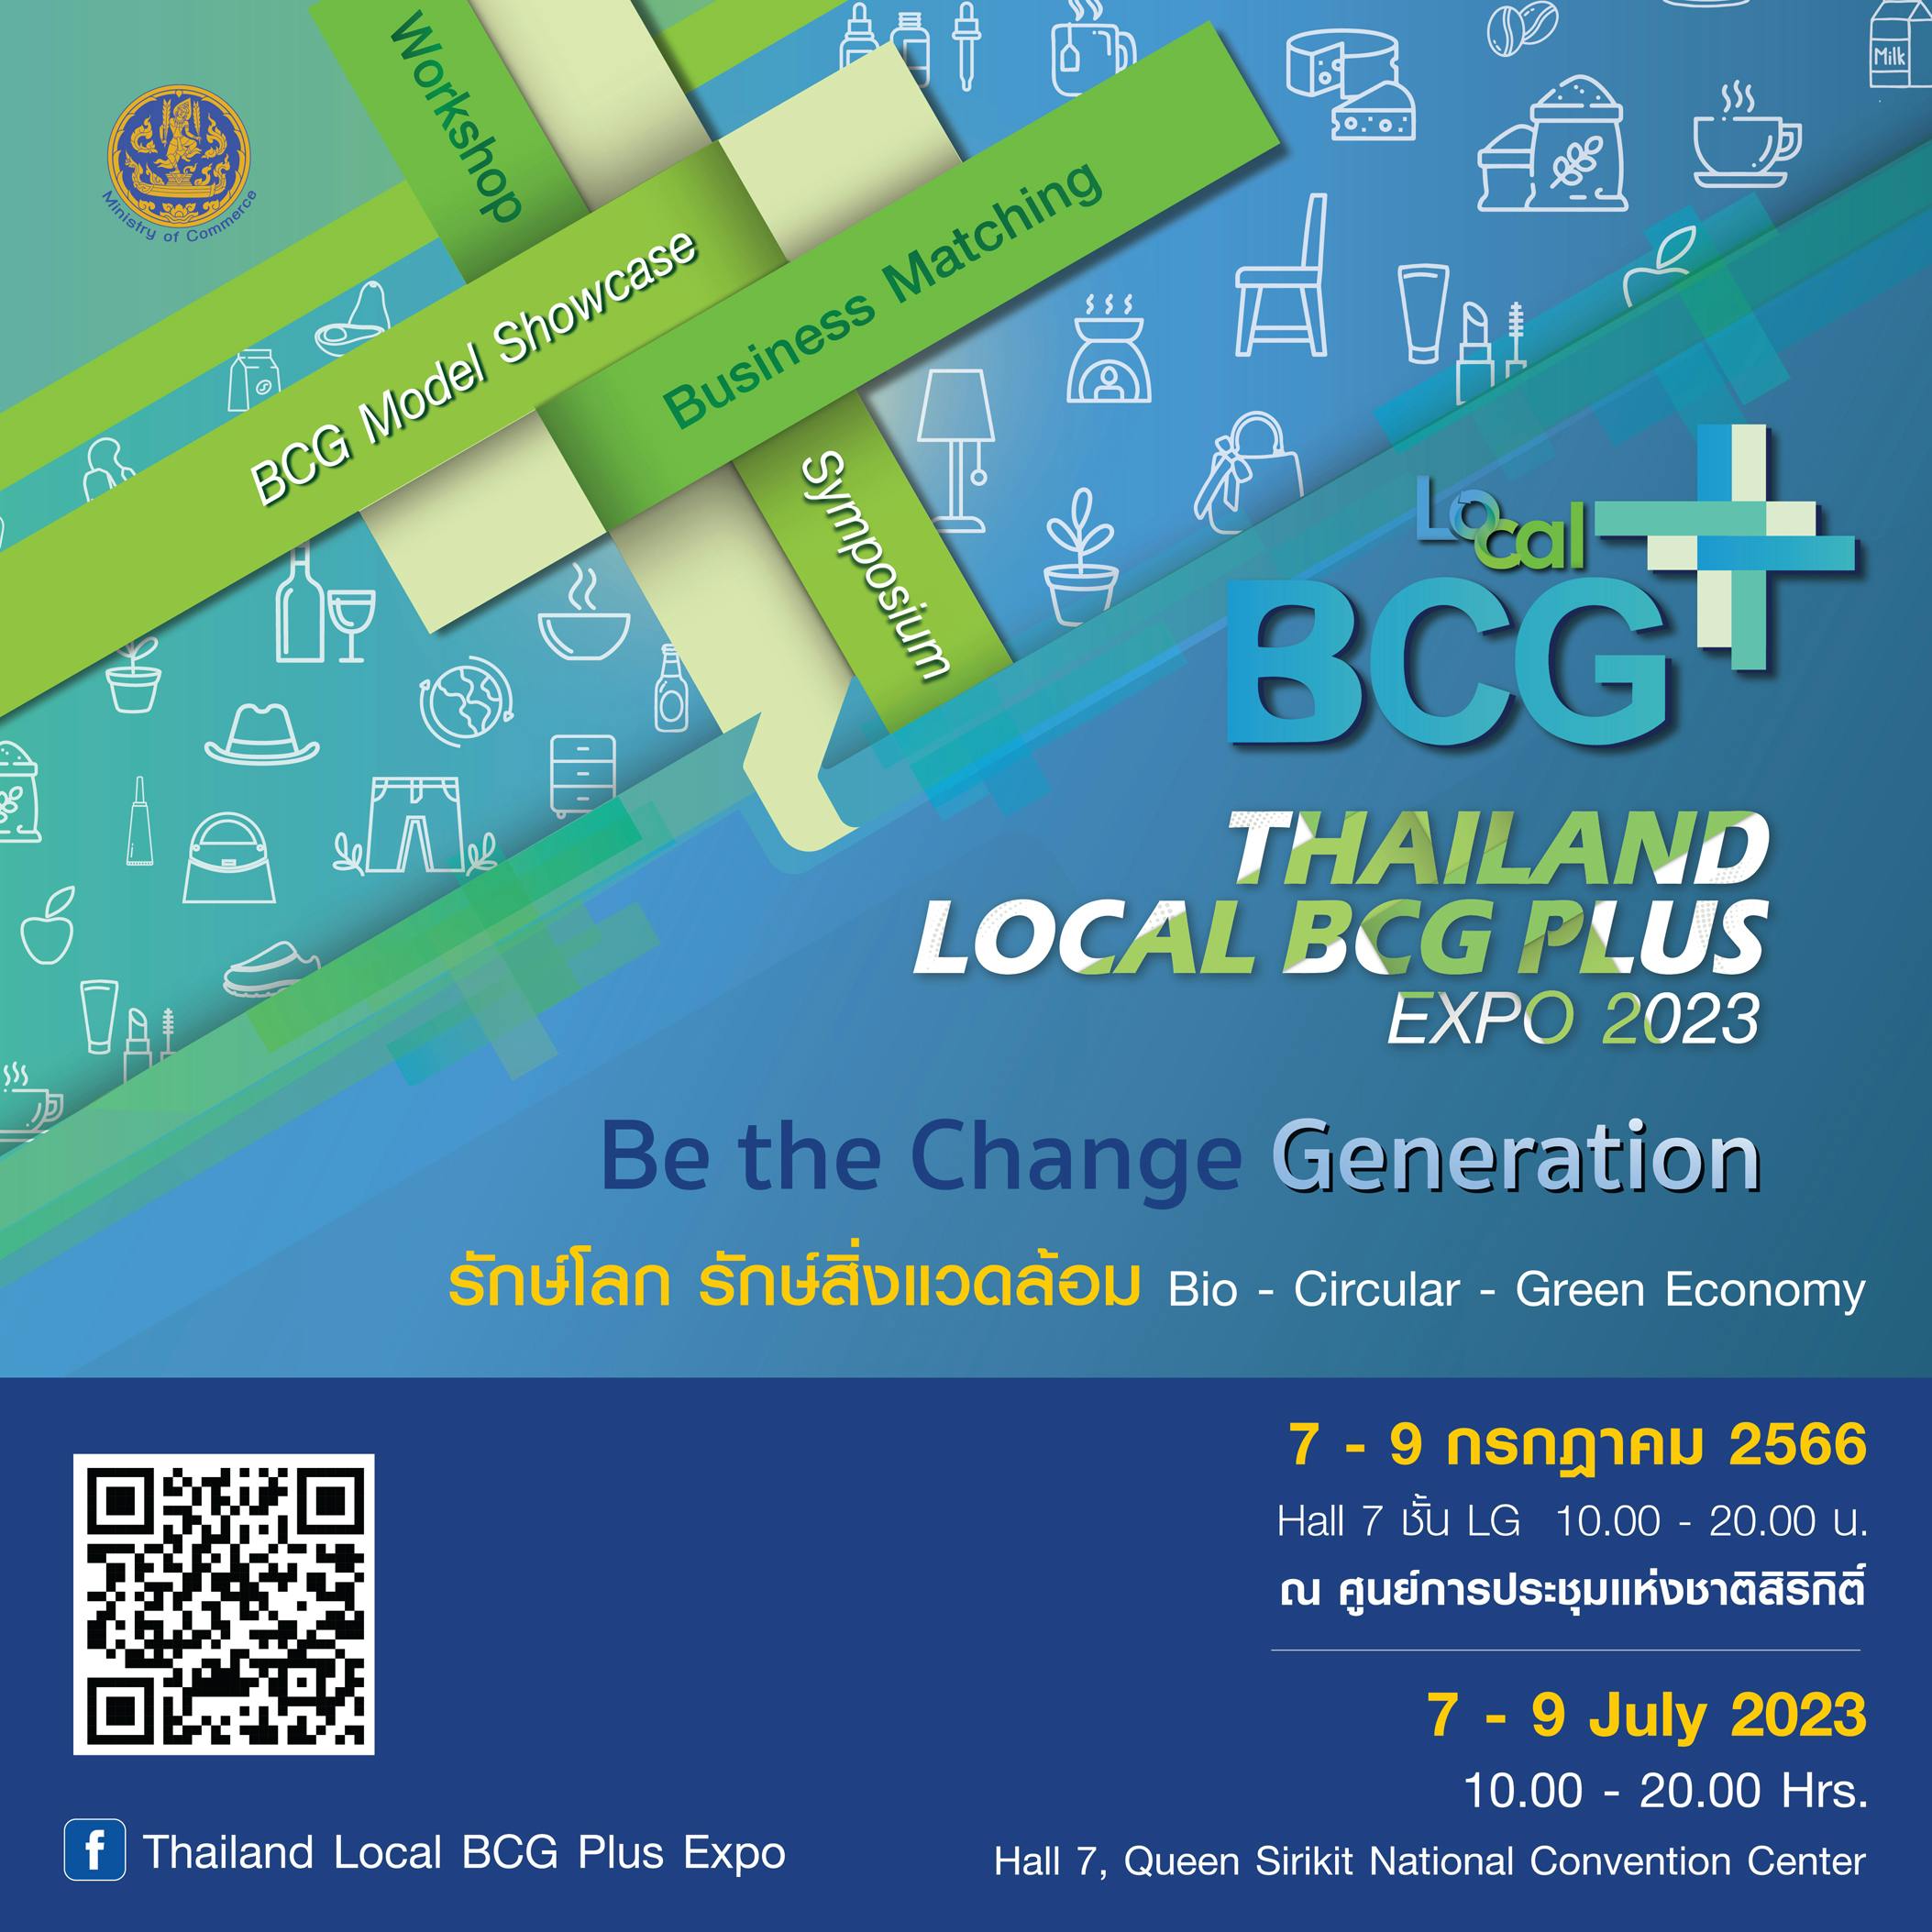 Thailand Local BCG Plus Expo 2023